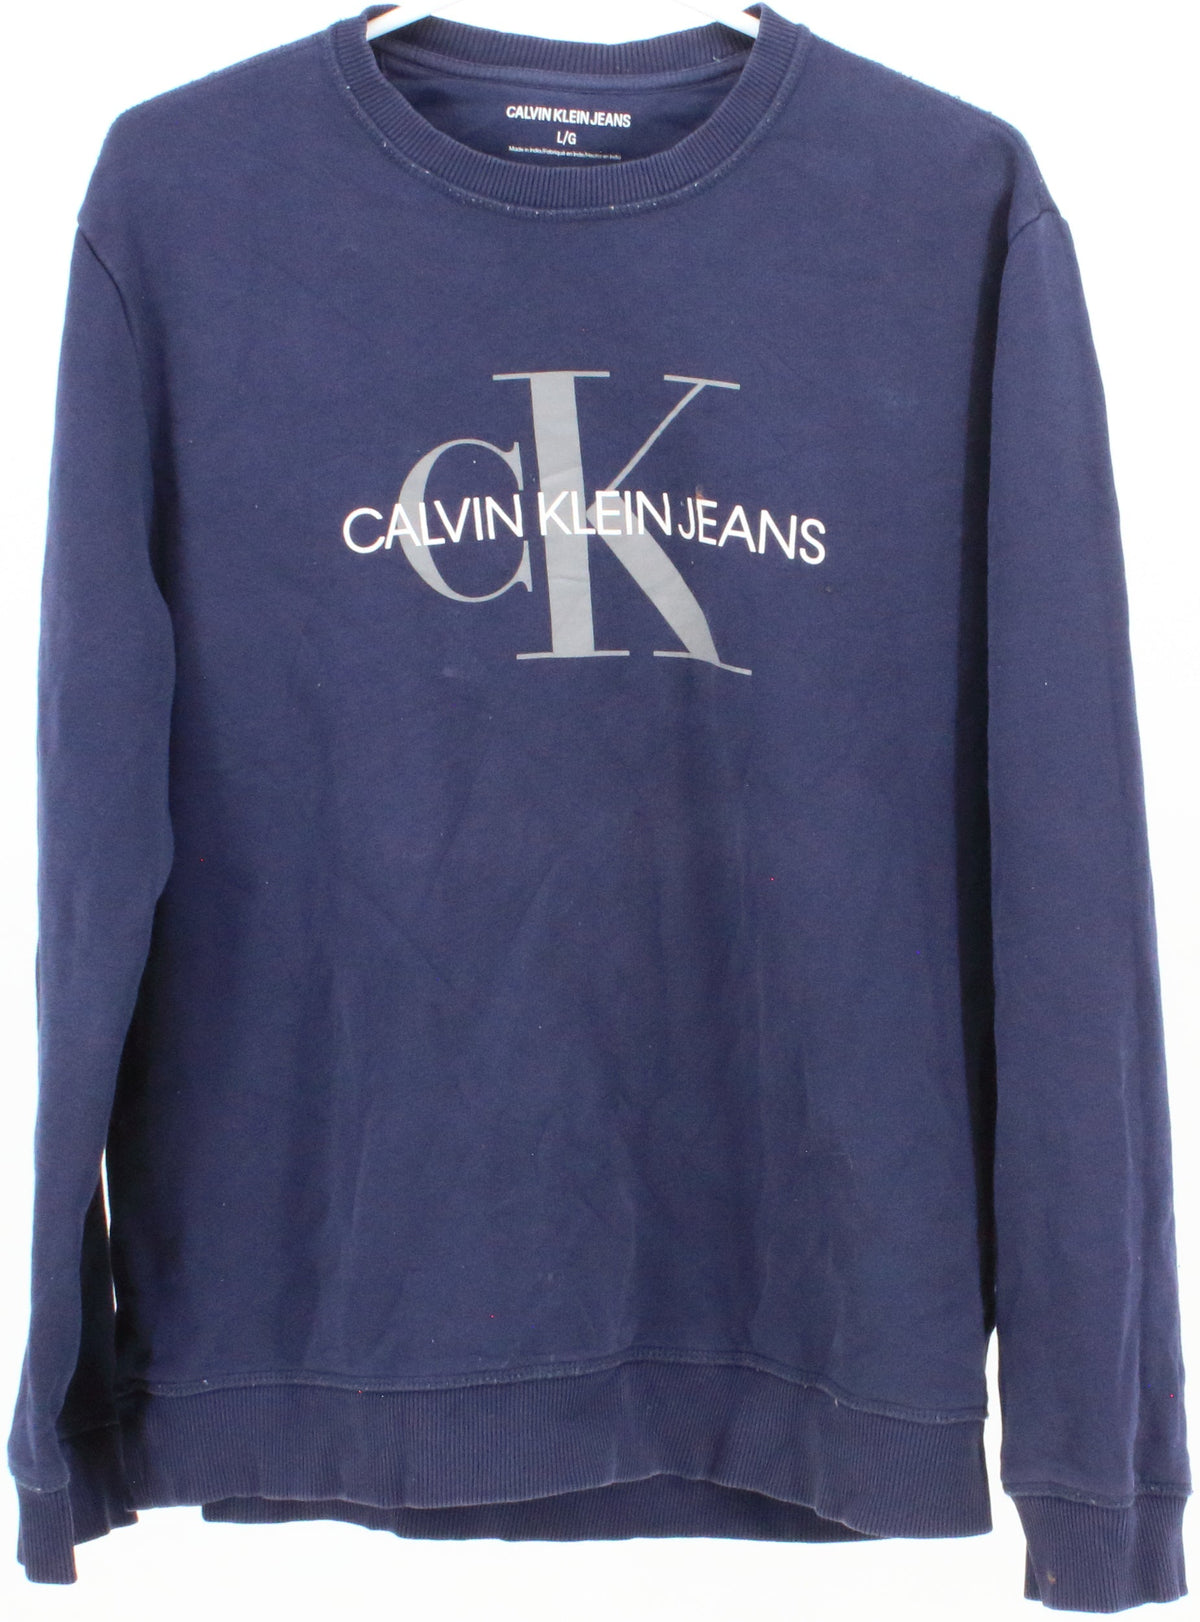 Calvin Klein Jeans Navy Blue Front Silk Sweatshirt